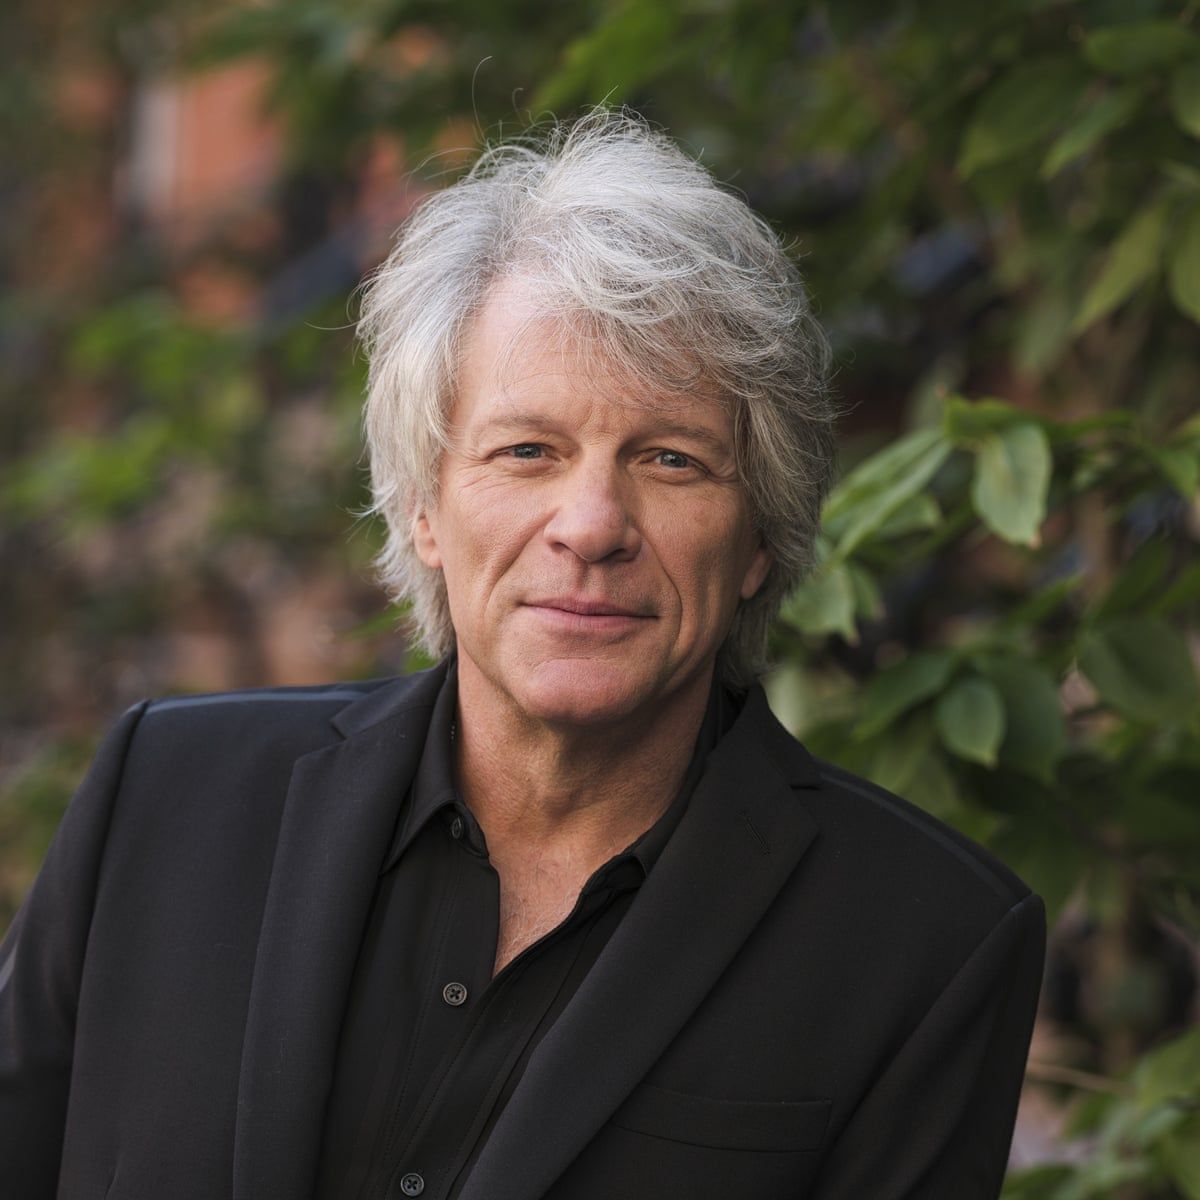 Muere Jon Bon Jovi a los 60 años de edad tras un paro cardiorespiratorio